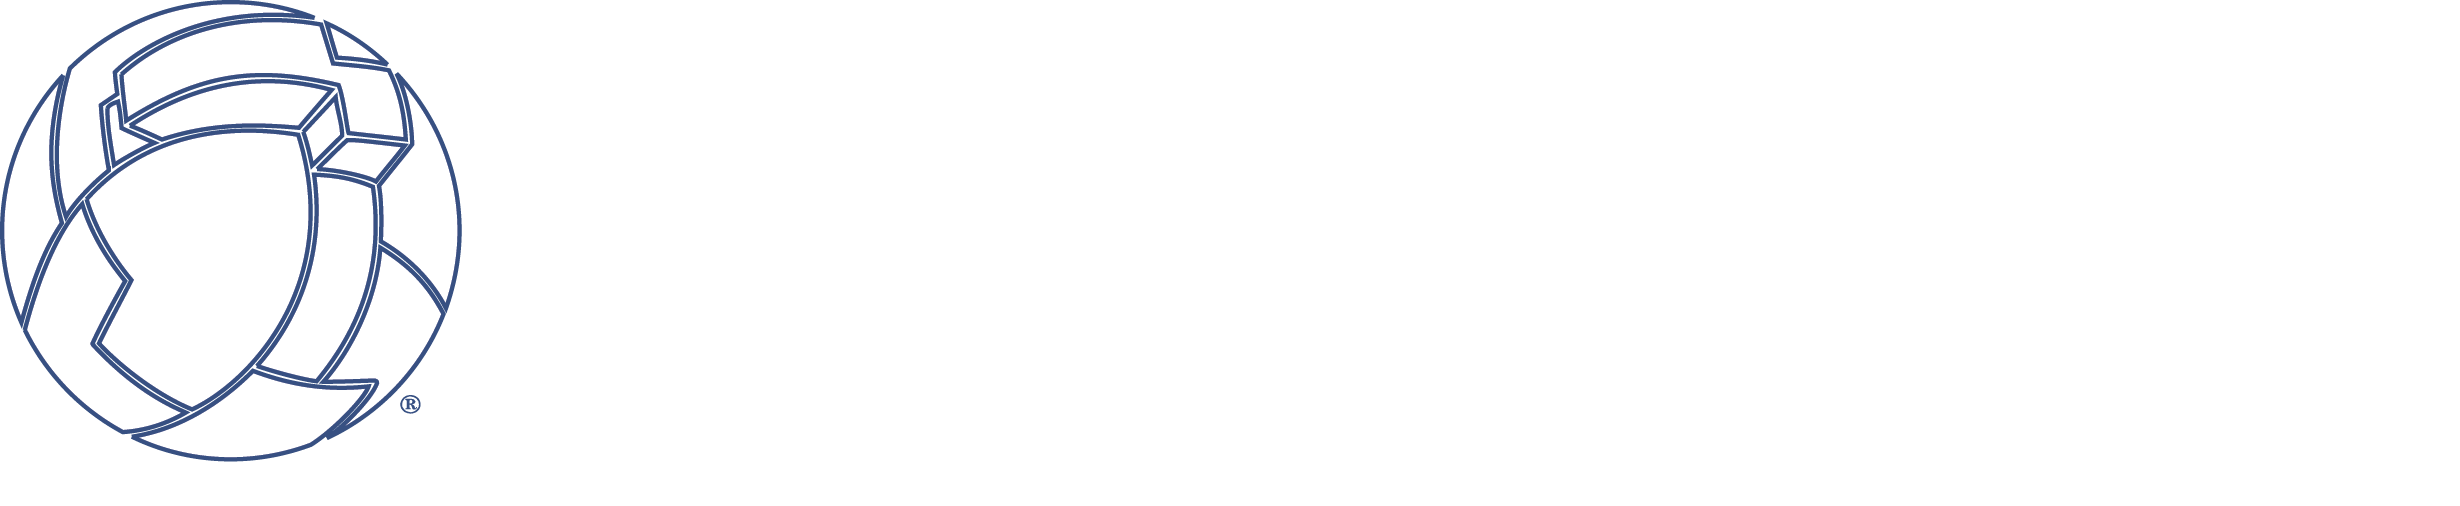 PDP Global